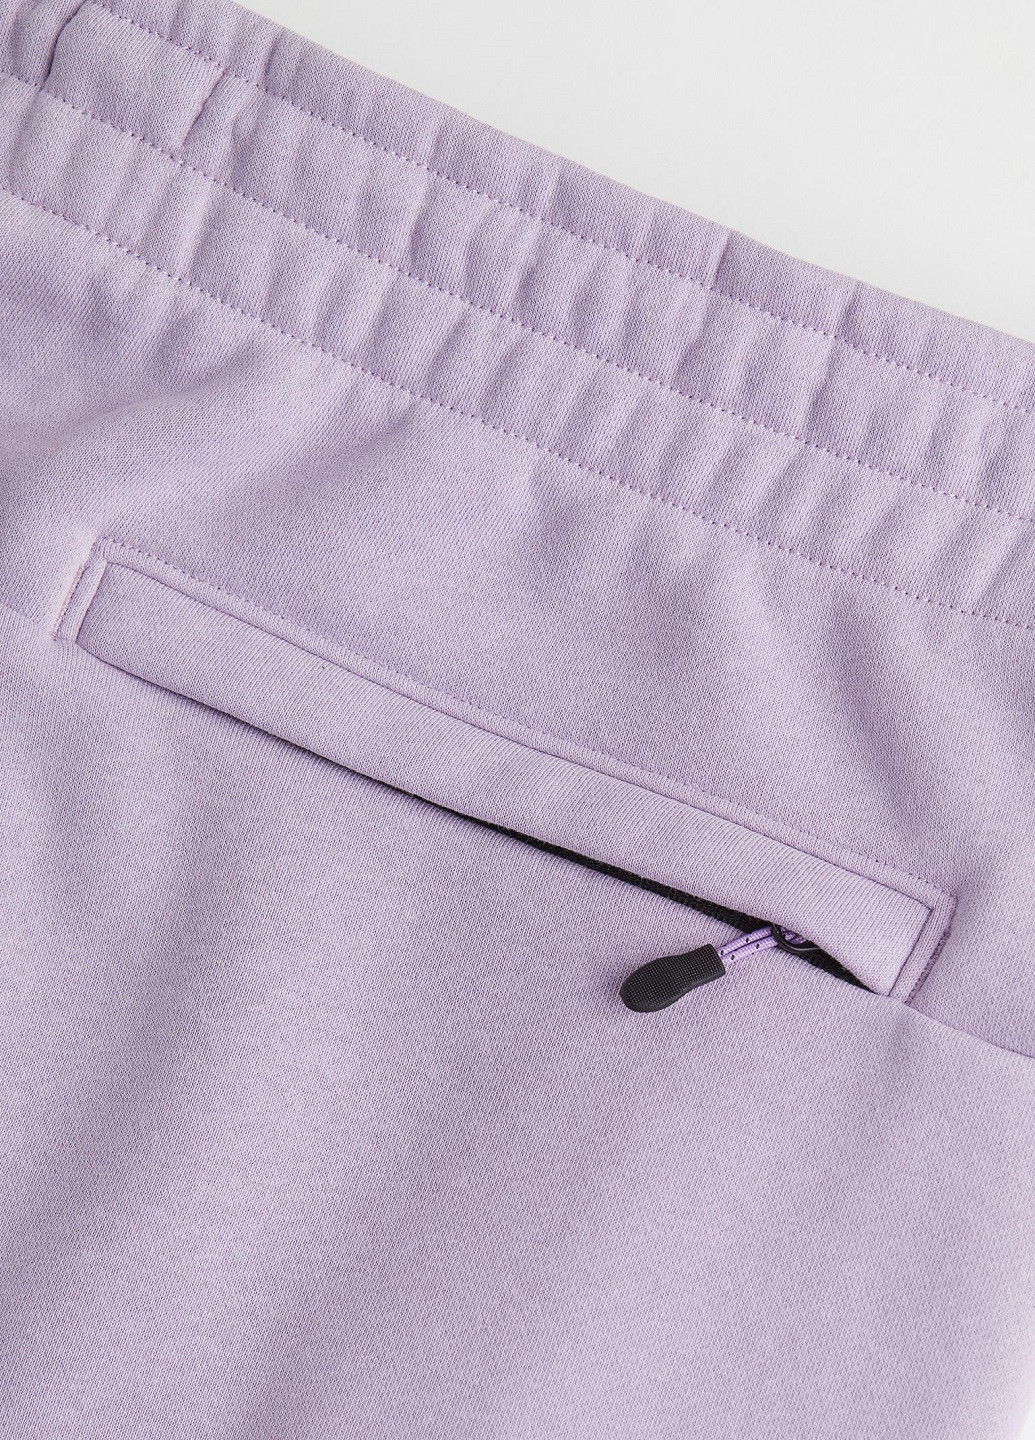 Фиолетовые демисезонные брюки H&M